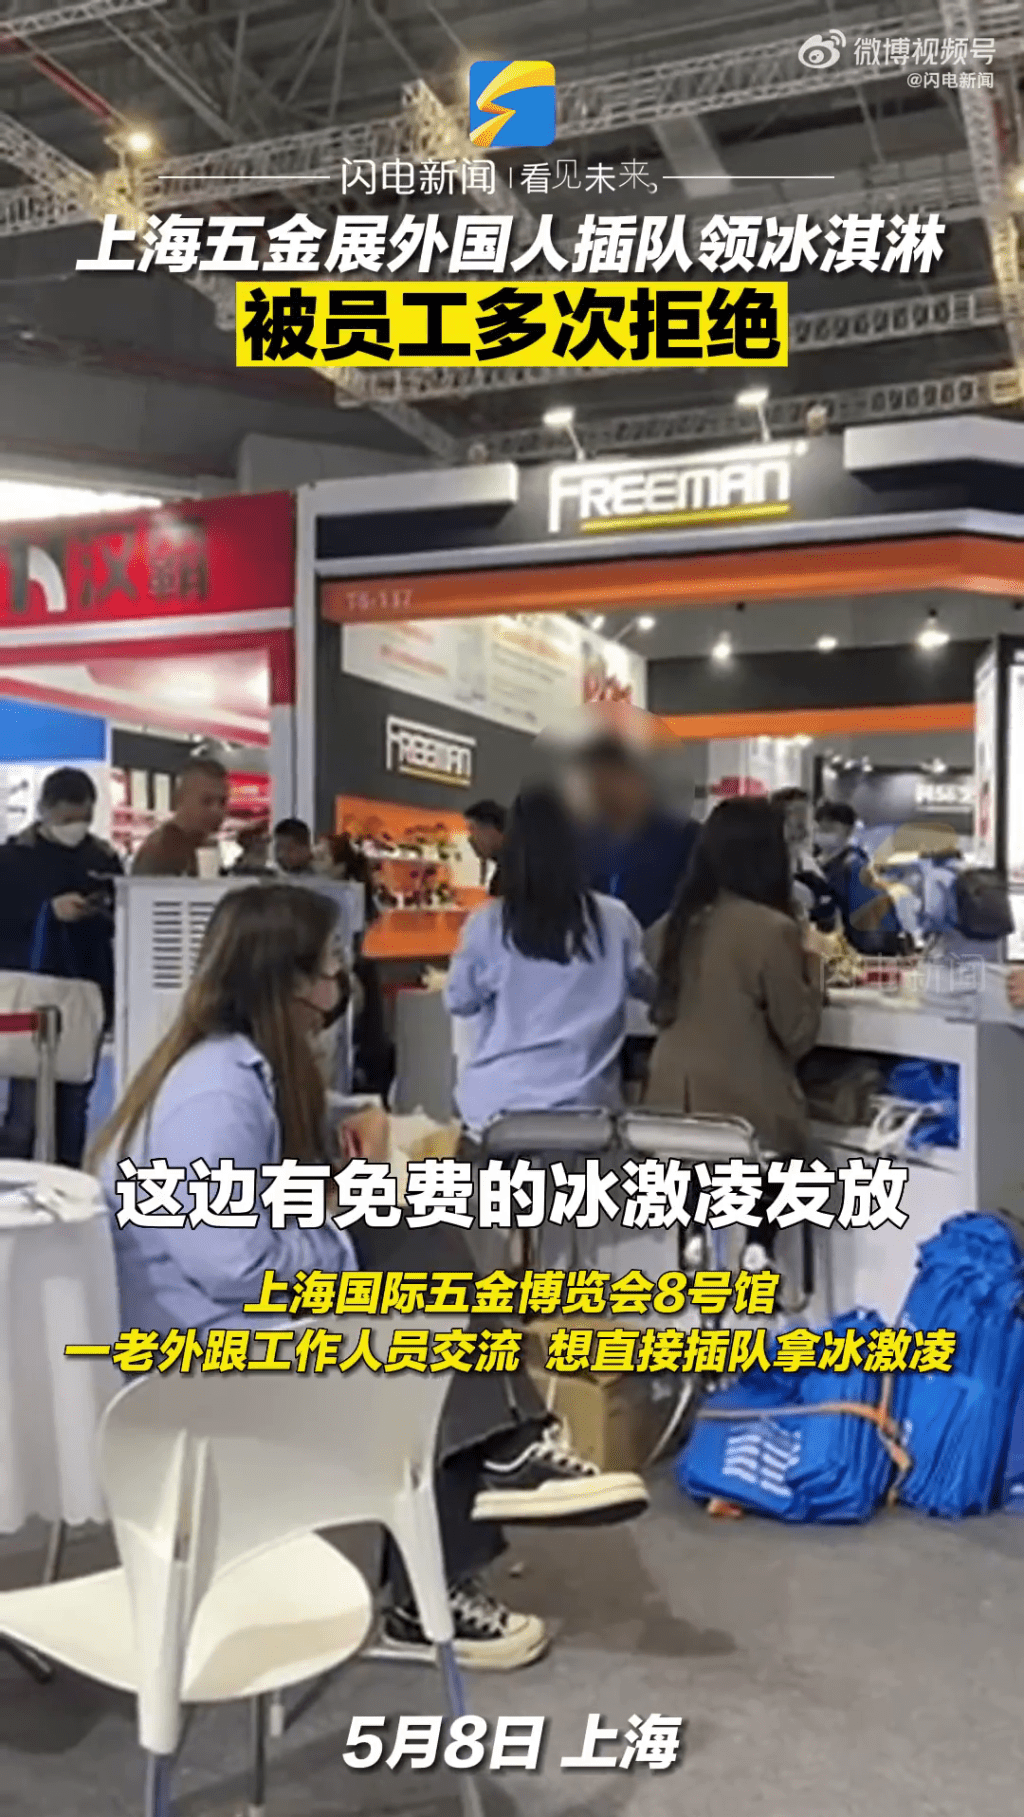 一名黑衫的外国人企图打尖直接问工作人员拿免费雪糕。